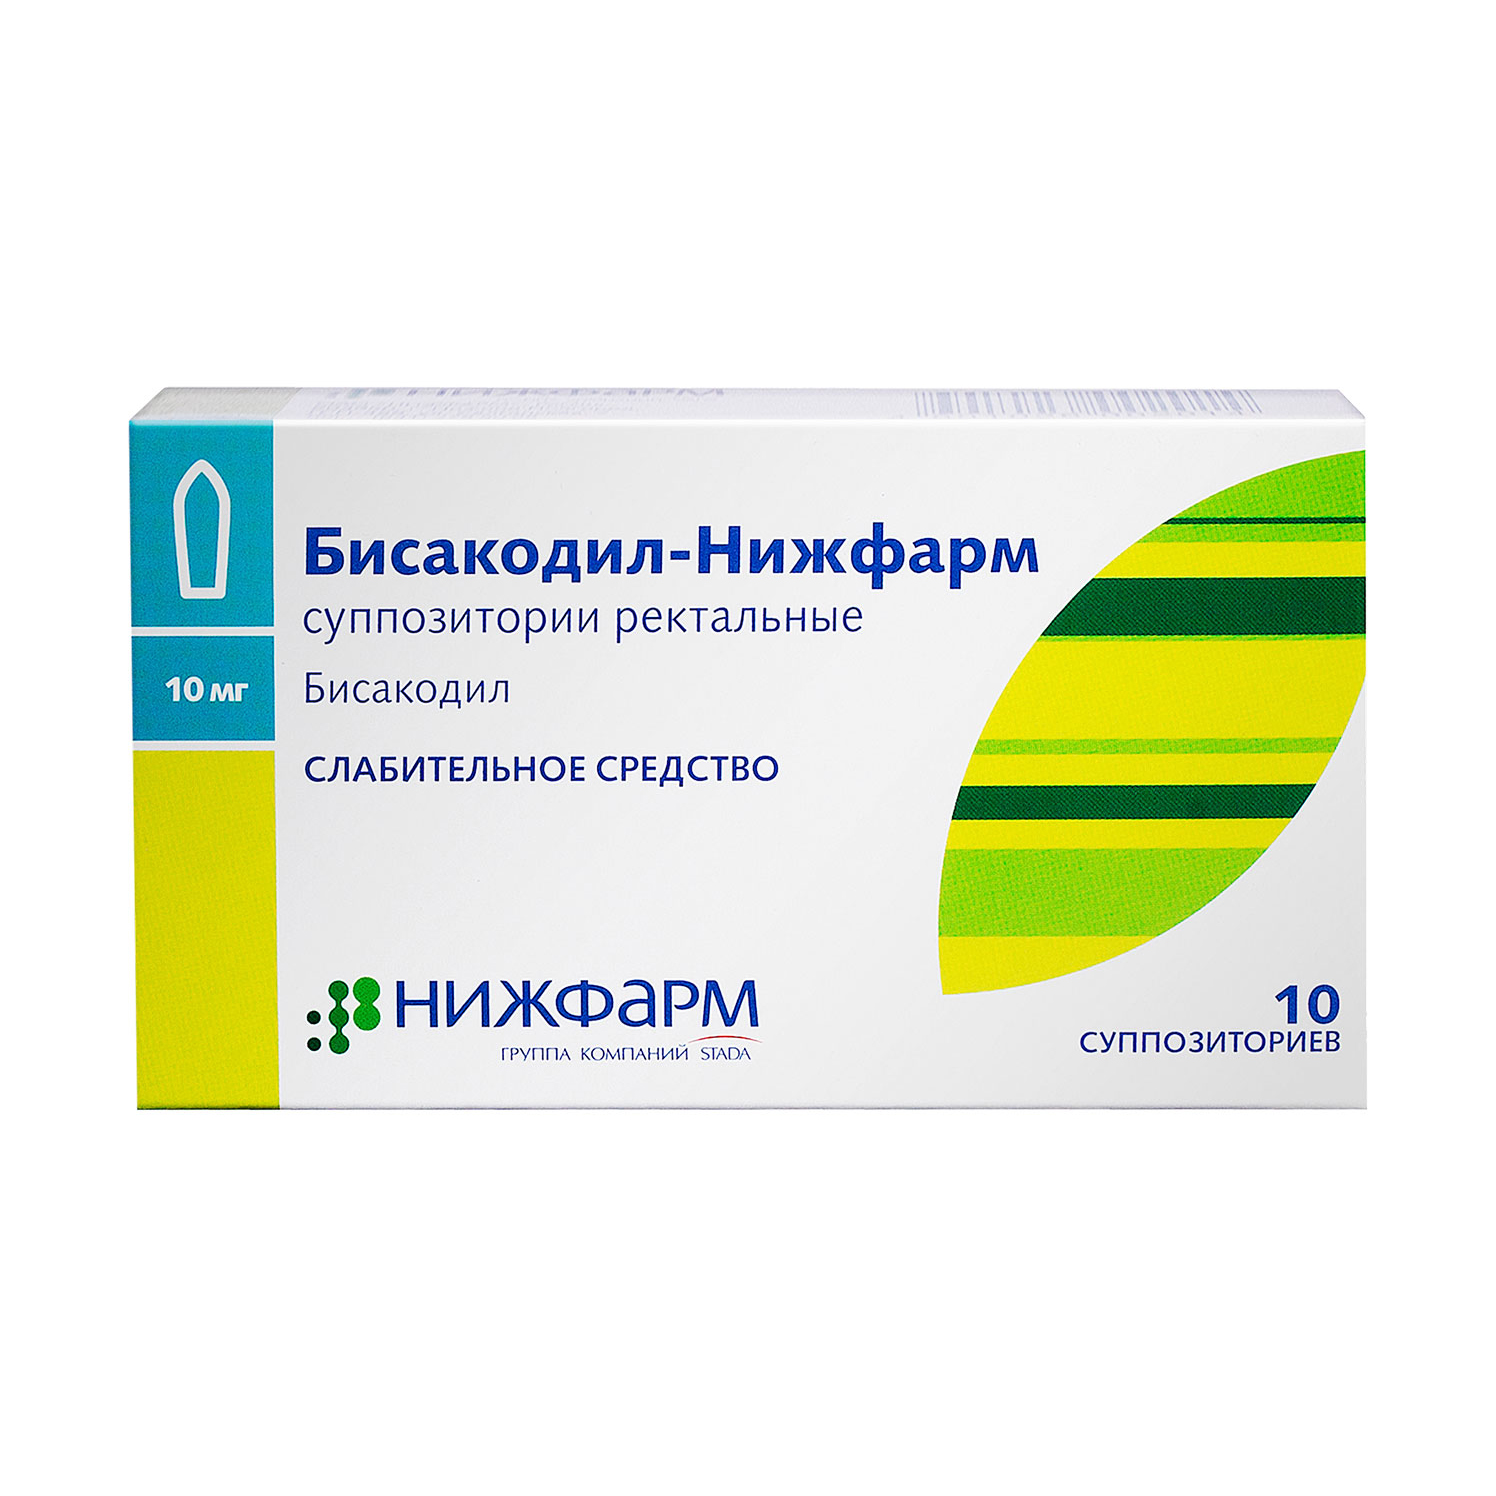 Бисакодил-Нижфарм суппозитории ректальные 10 мг 10 шт.